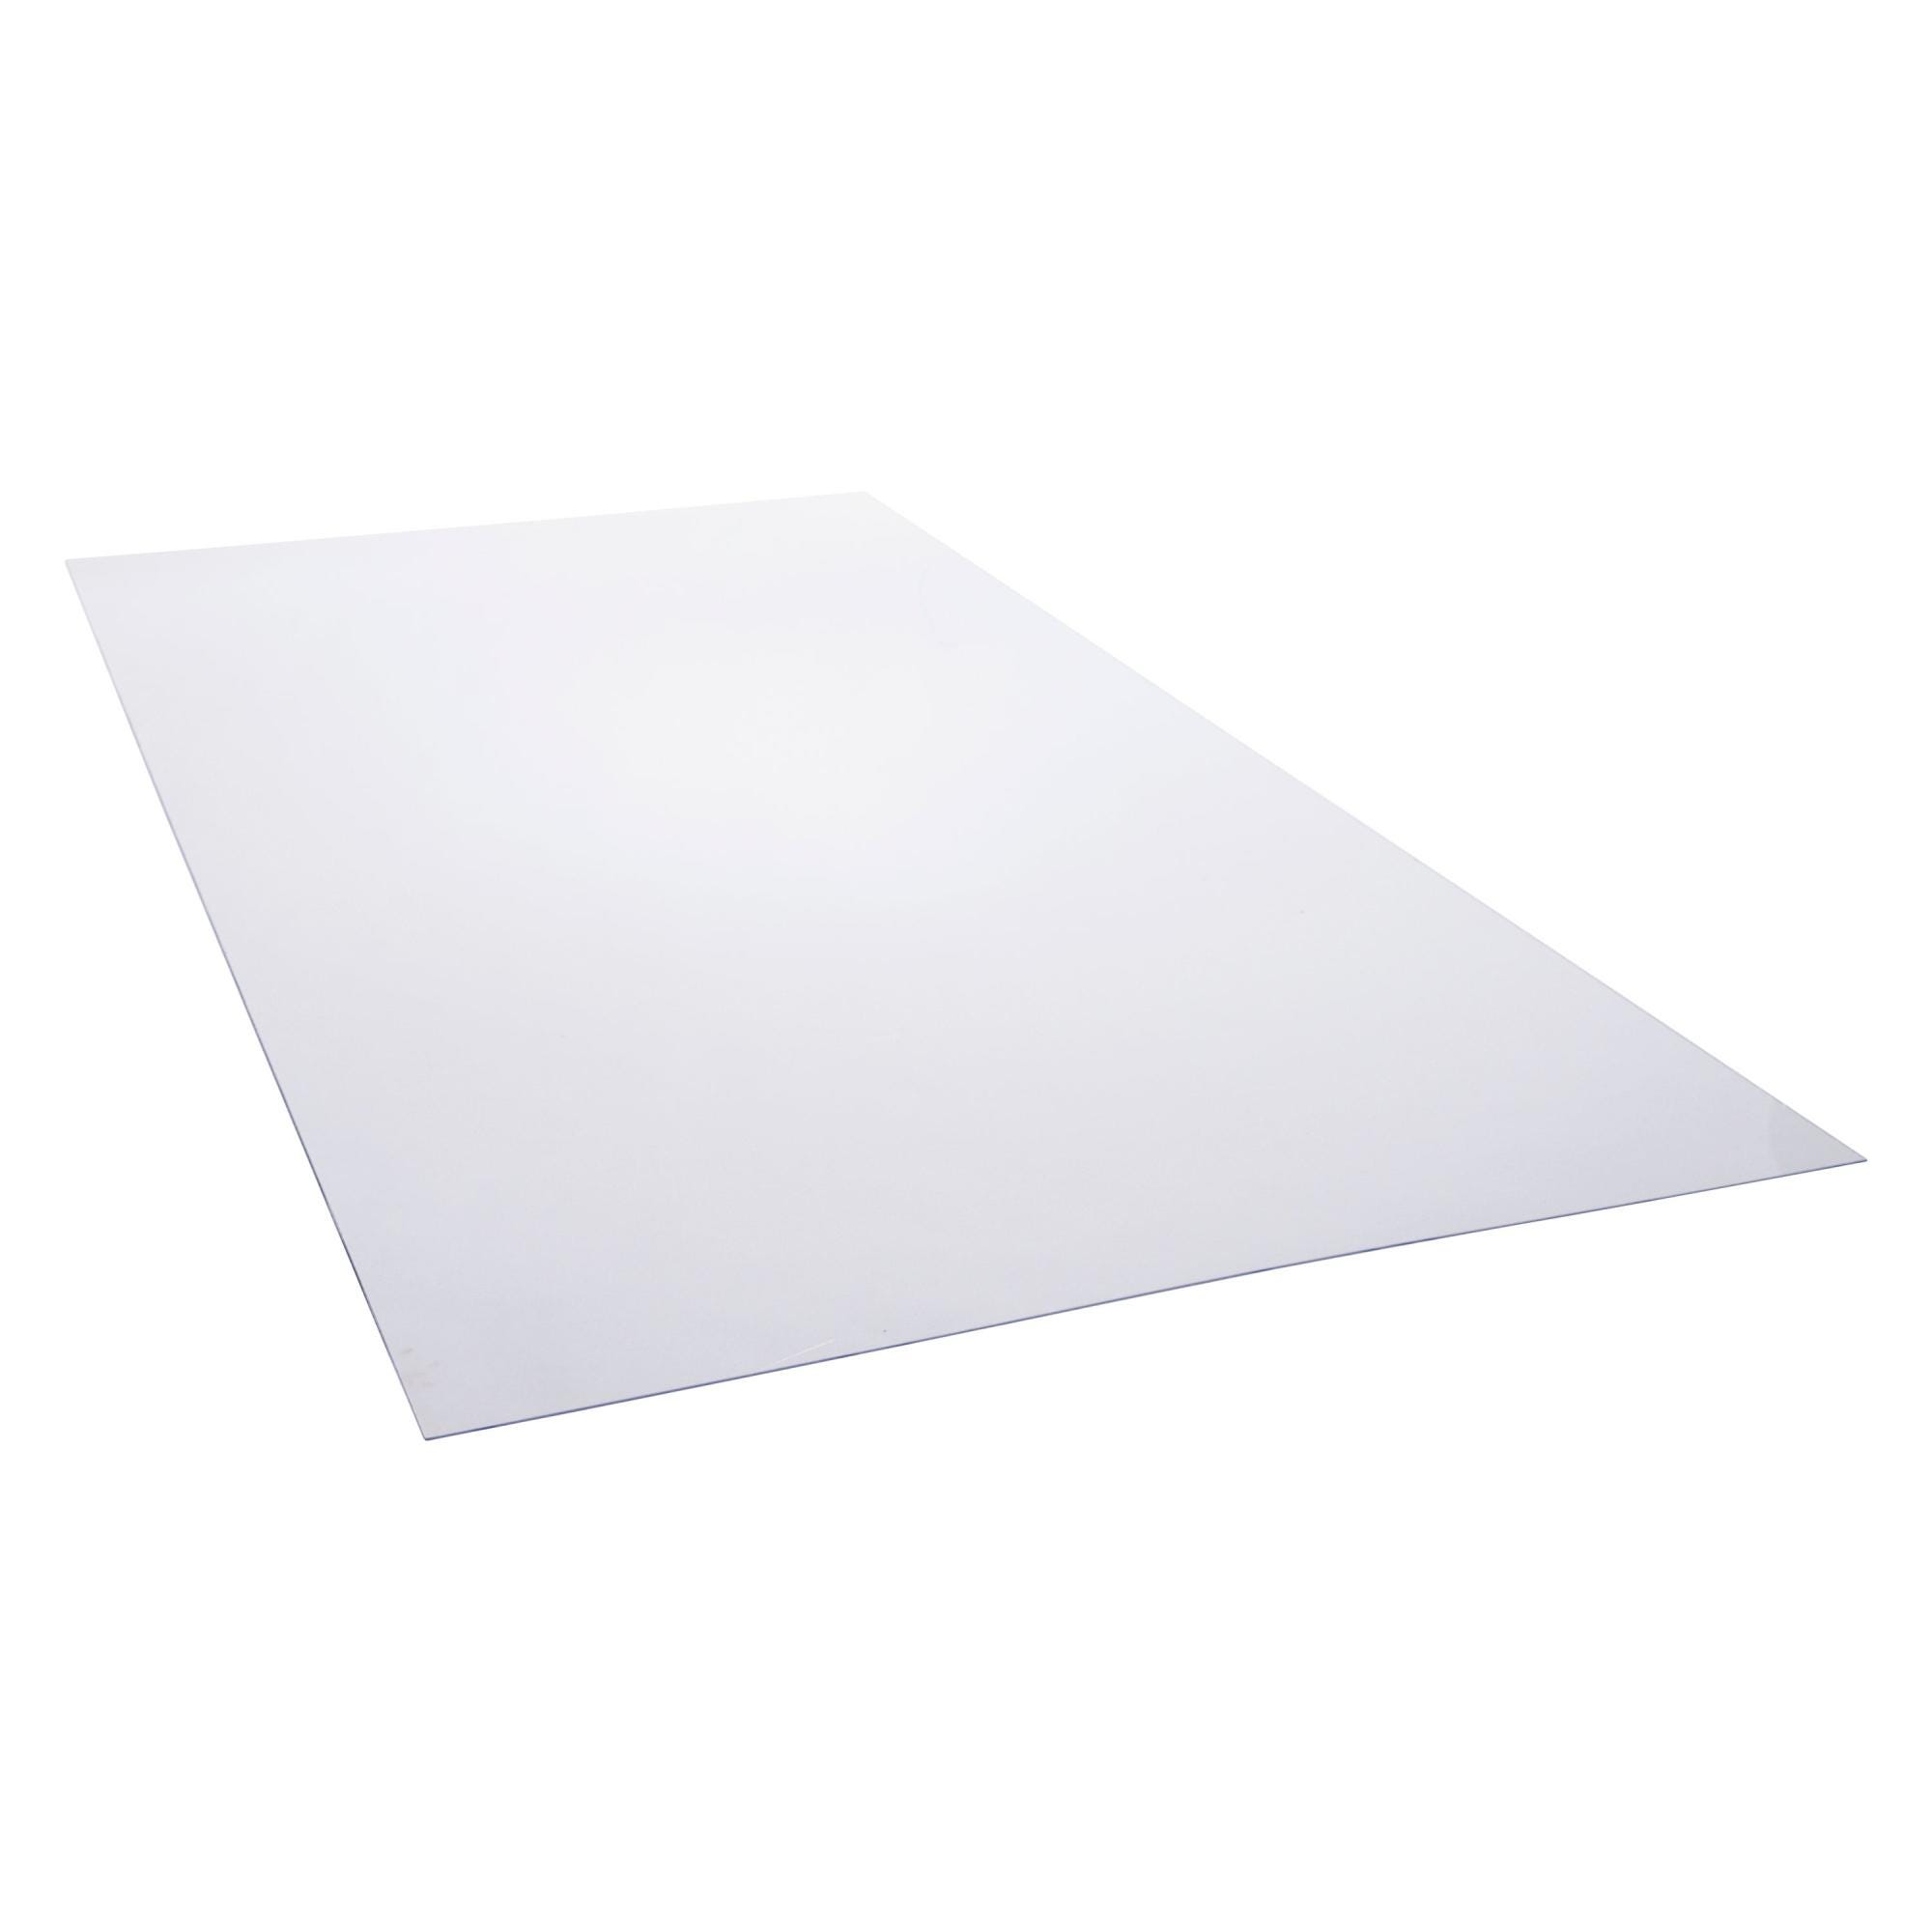 Plaque PVC Transparent : dimensions - Epaisseur 0,15 mm